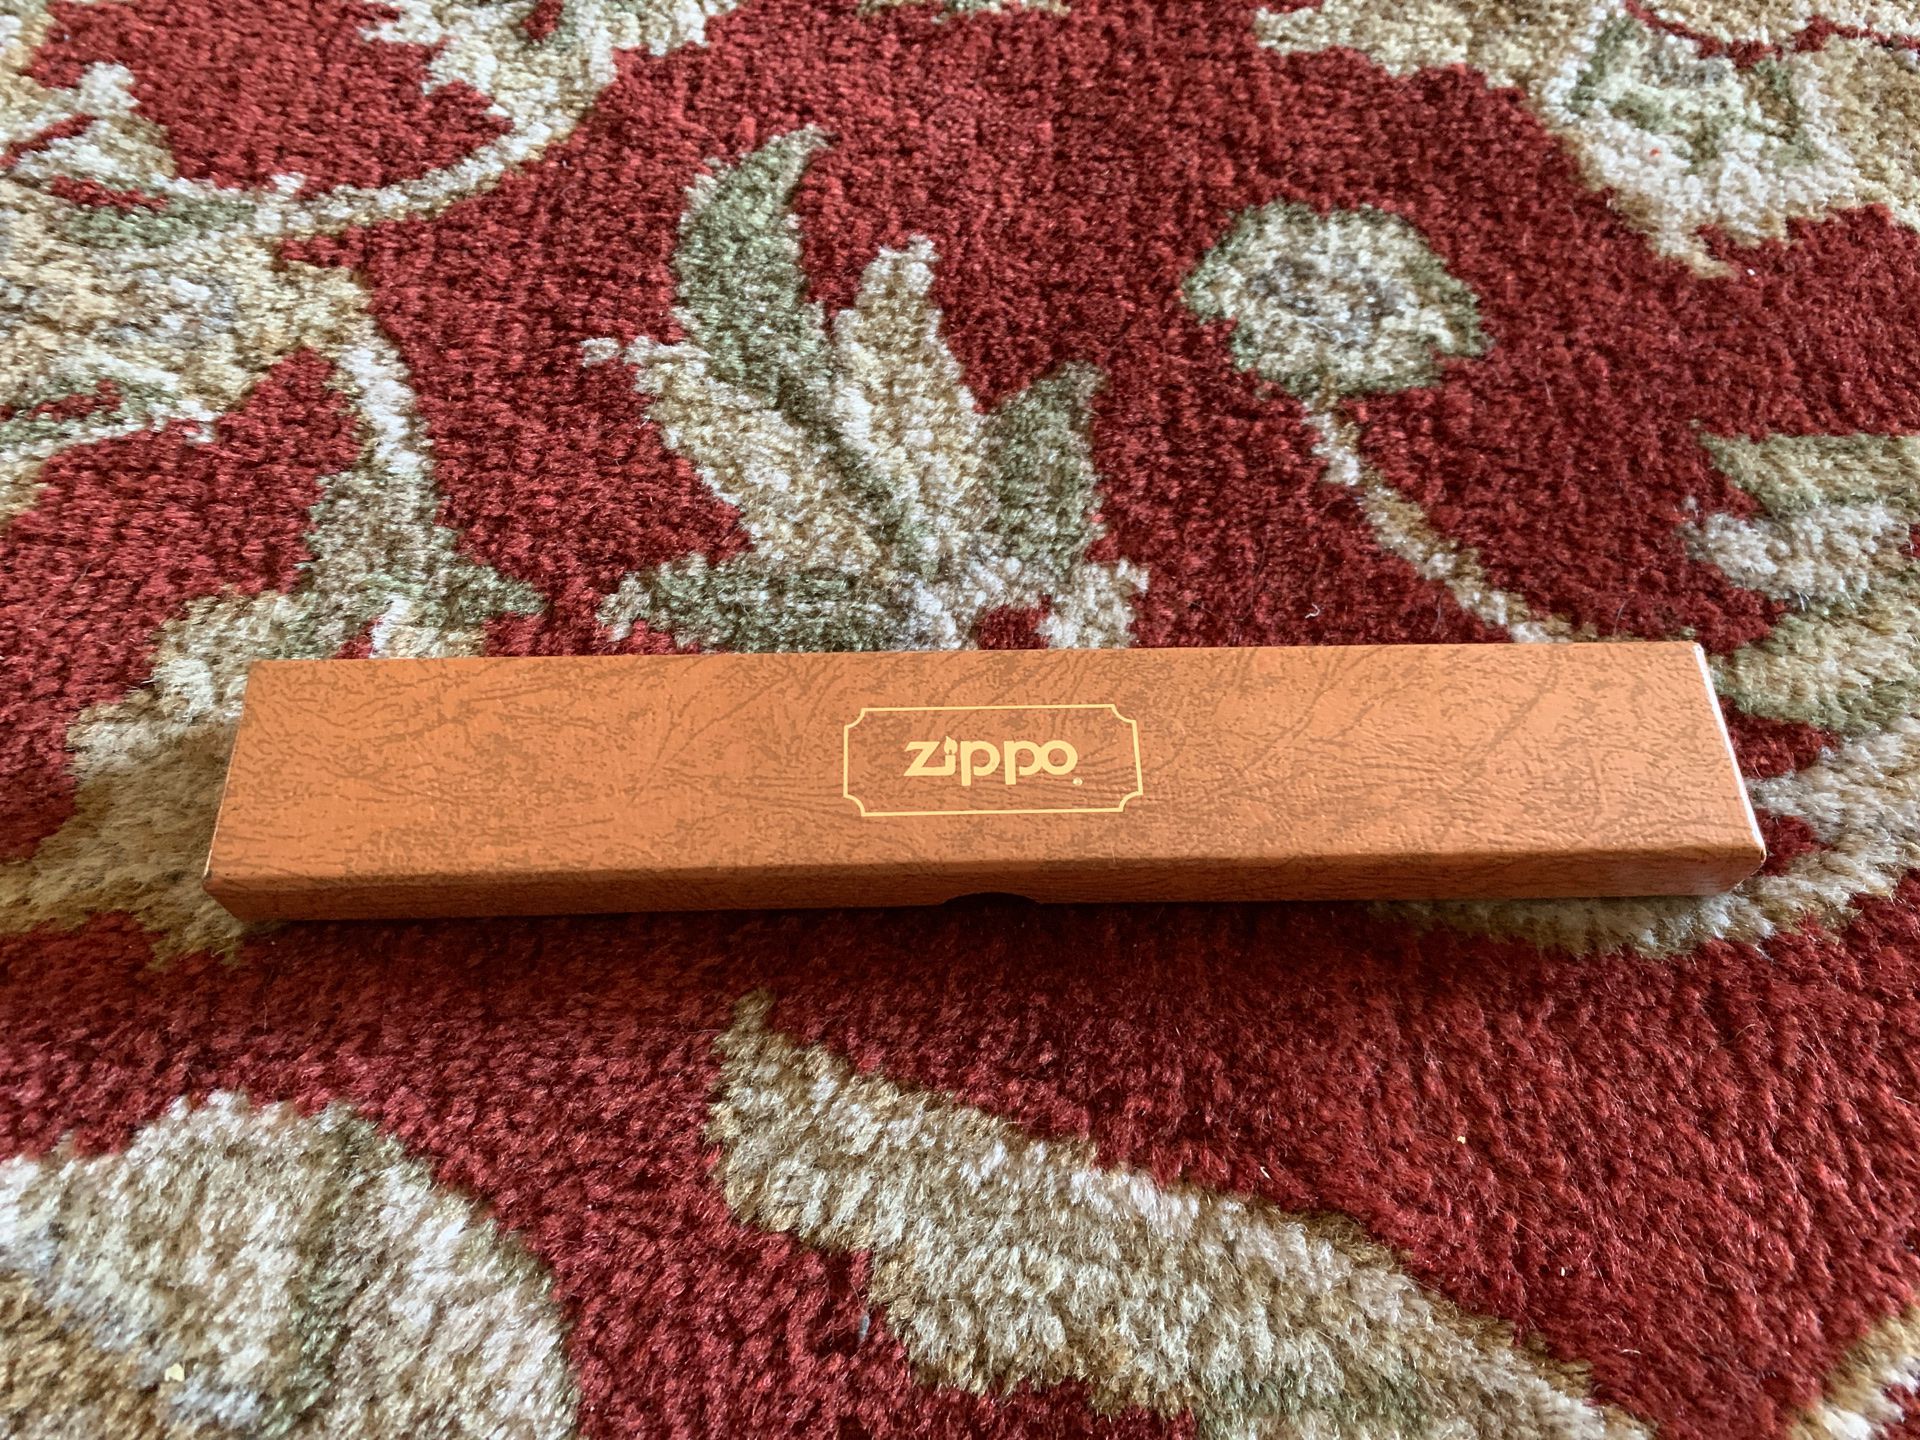 Zippo letter opener